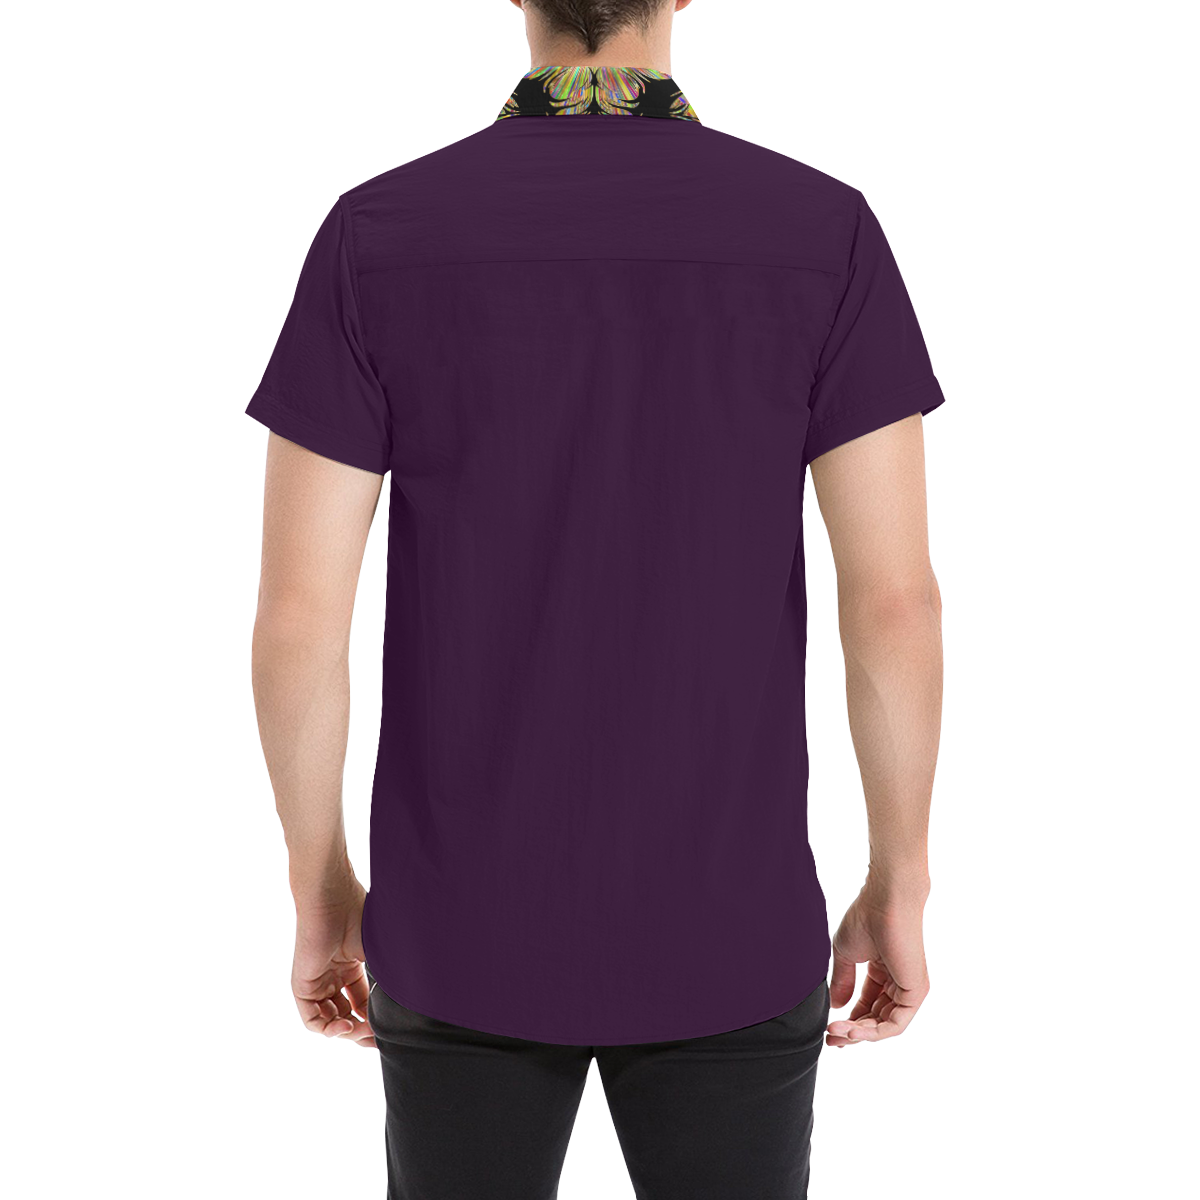 92782 Grape Ape Men's All Over Print Short Sleeve Shirt (Model T53)